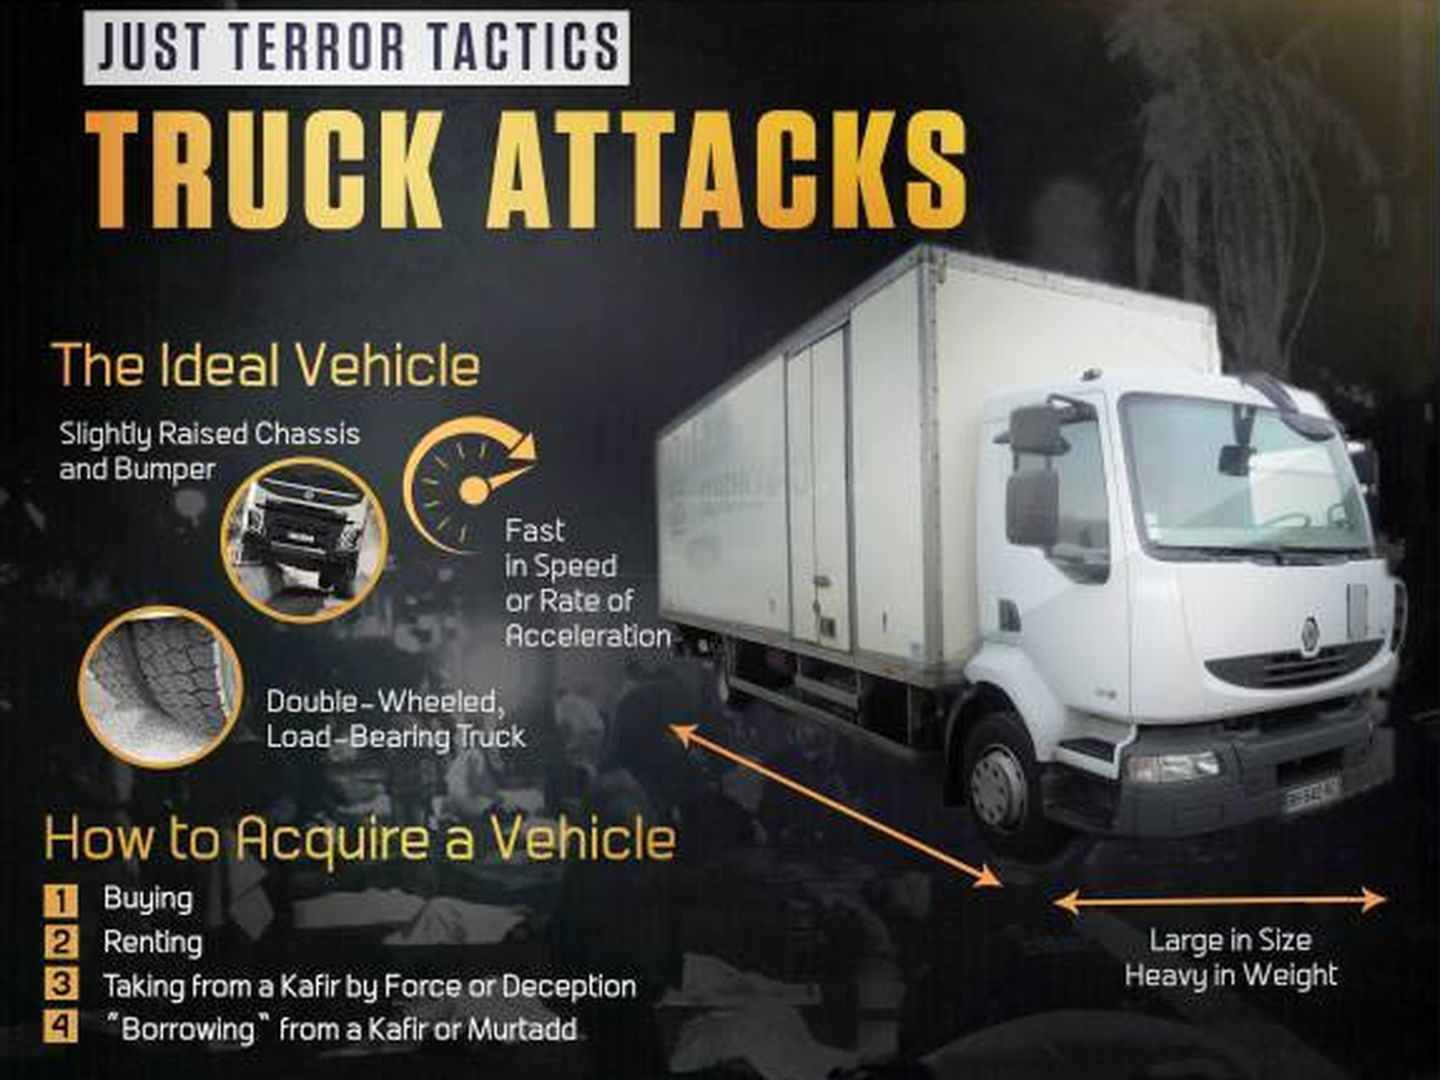 Una imagen extraída del número 3 de 'Rumiyah', la revista oficial del ISIS, llamando a realizar atentados con vehículos grandes.